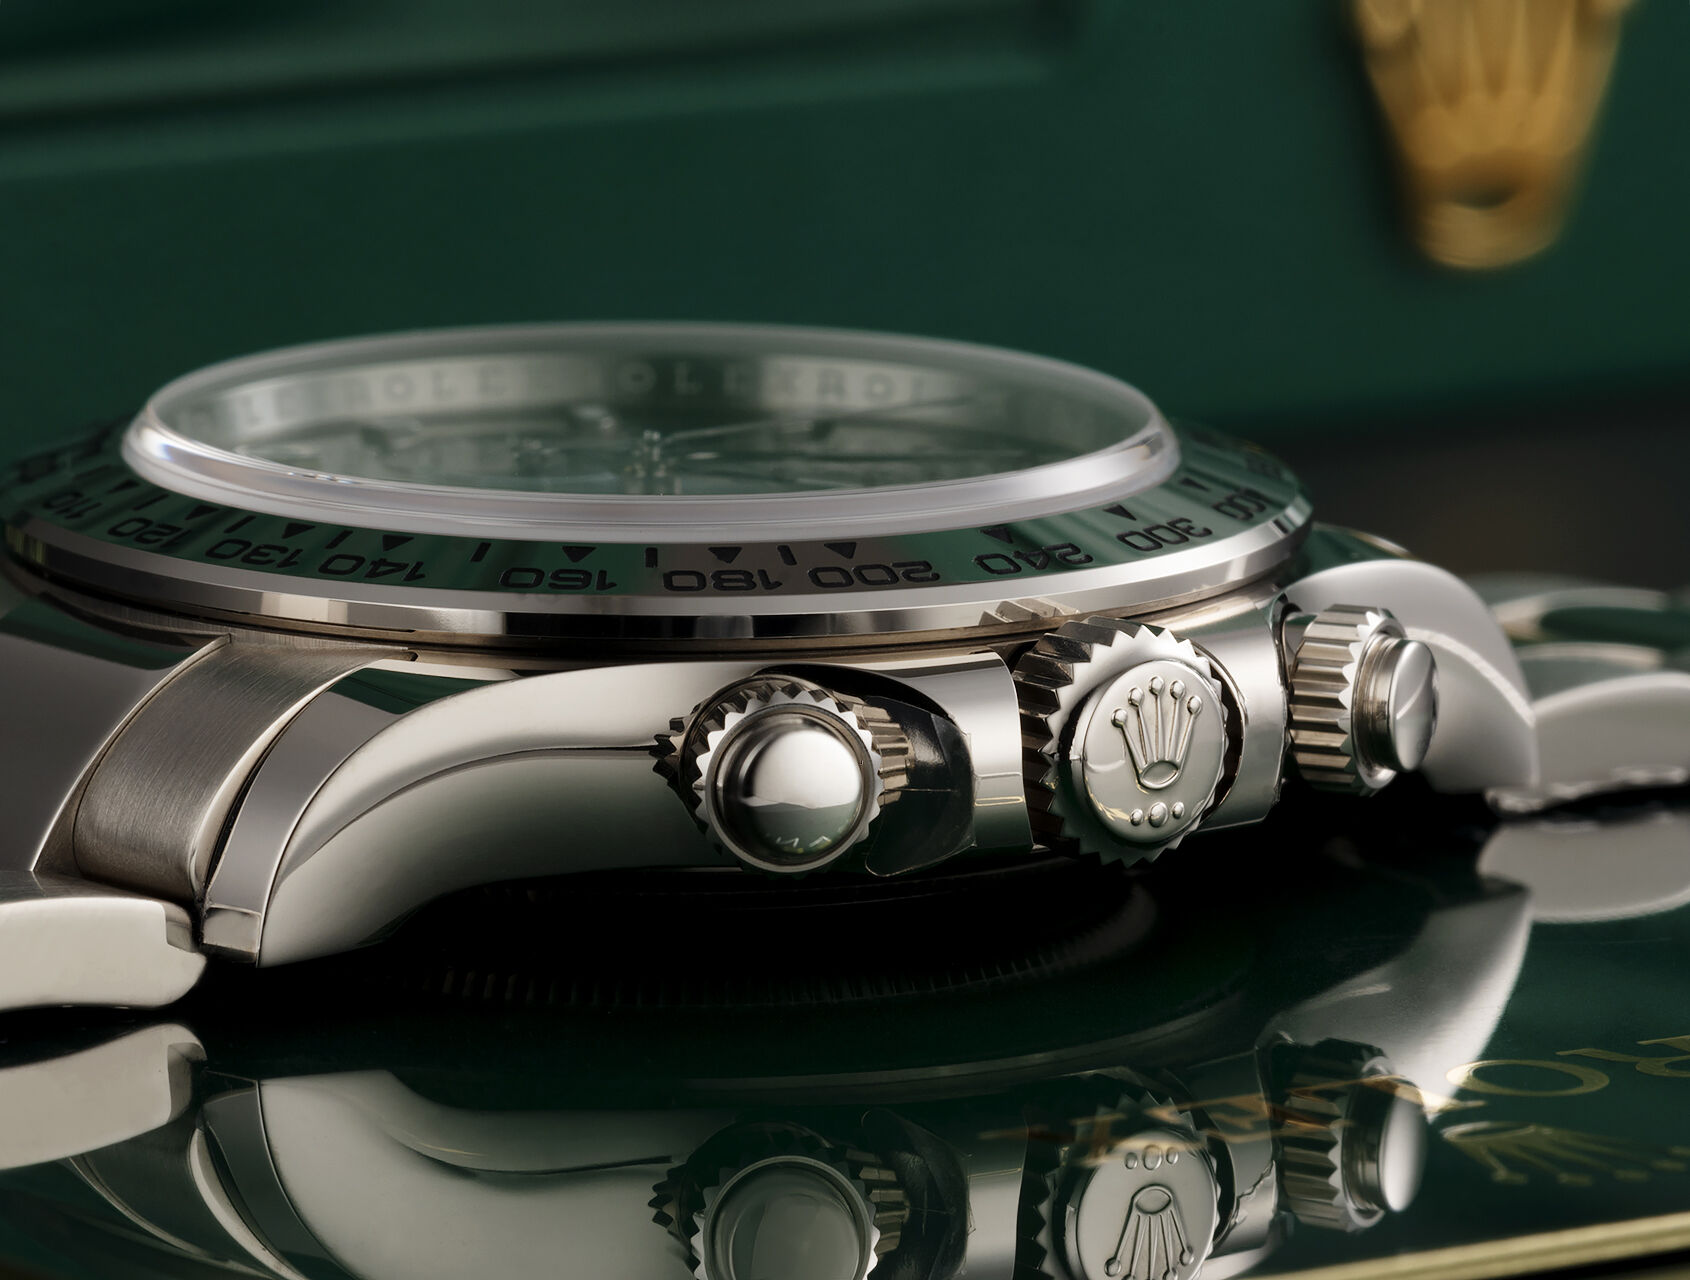 tham khảo 116509 |  116509 - Bảo hành Rolex đến 2027 |  Rolex Cosmograph Daytona